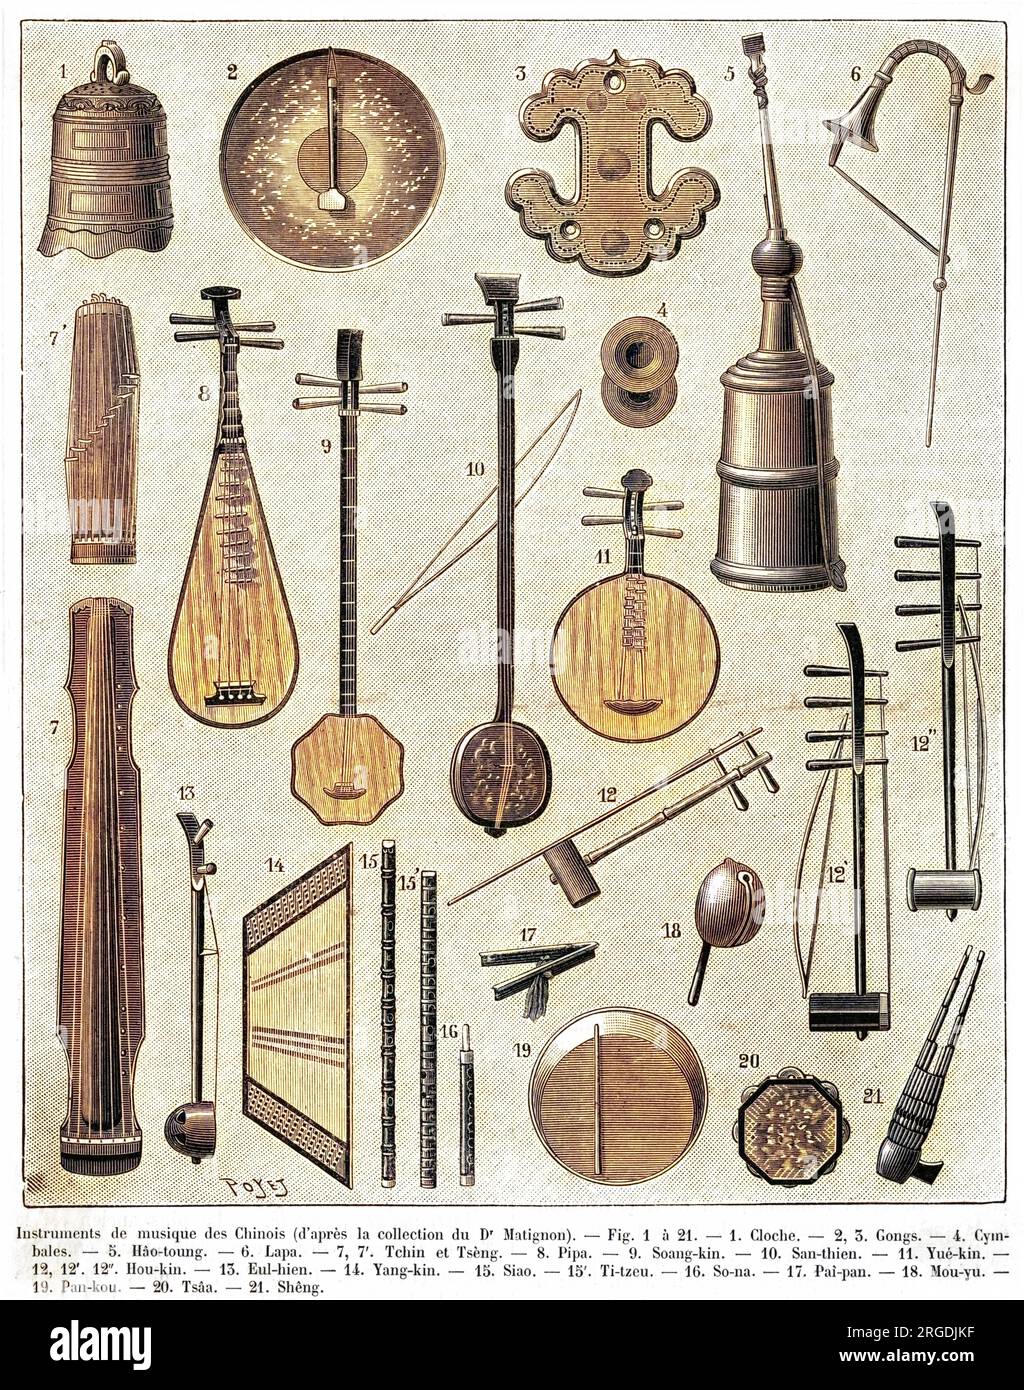 Eine Auswahl chinesischer Musikinstrumente, einschließlich einer Glocke (1 15), gong (), Becken (4 14), Guqin oder siebensträngiger Zither (7), einer Pipa oder viersträngiger Laute (8), Yueqin oder mondförmige Laute (11), Shamisen (10), erhu oder Spike Fiddle (21), auch bekannt als siang-Cangao (13) und Xangao (2). Stockfoto